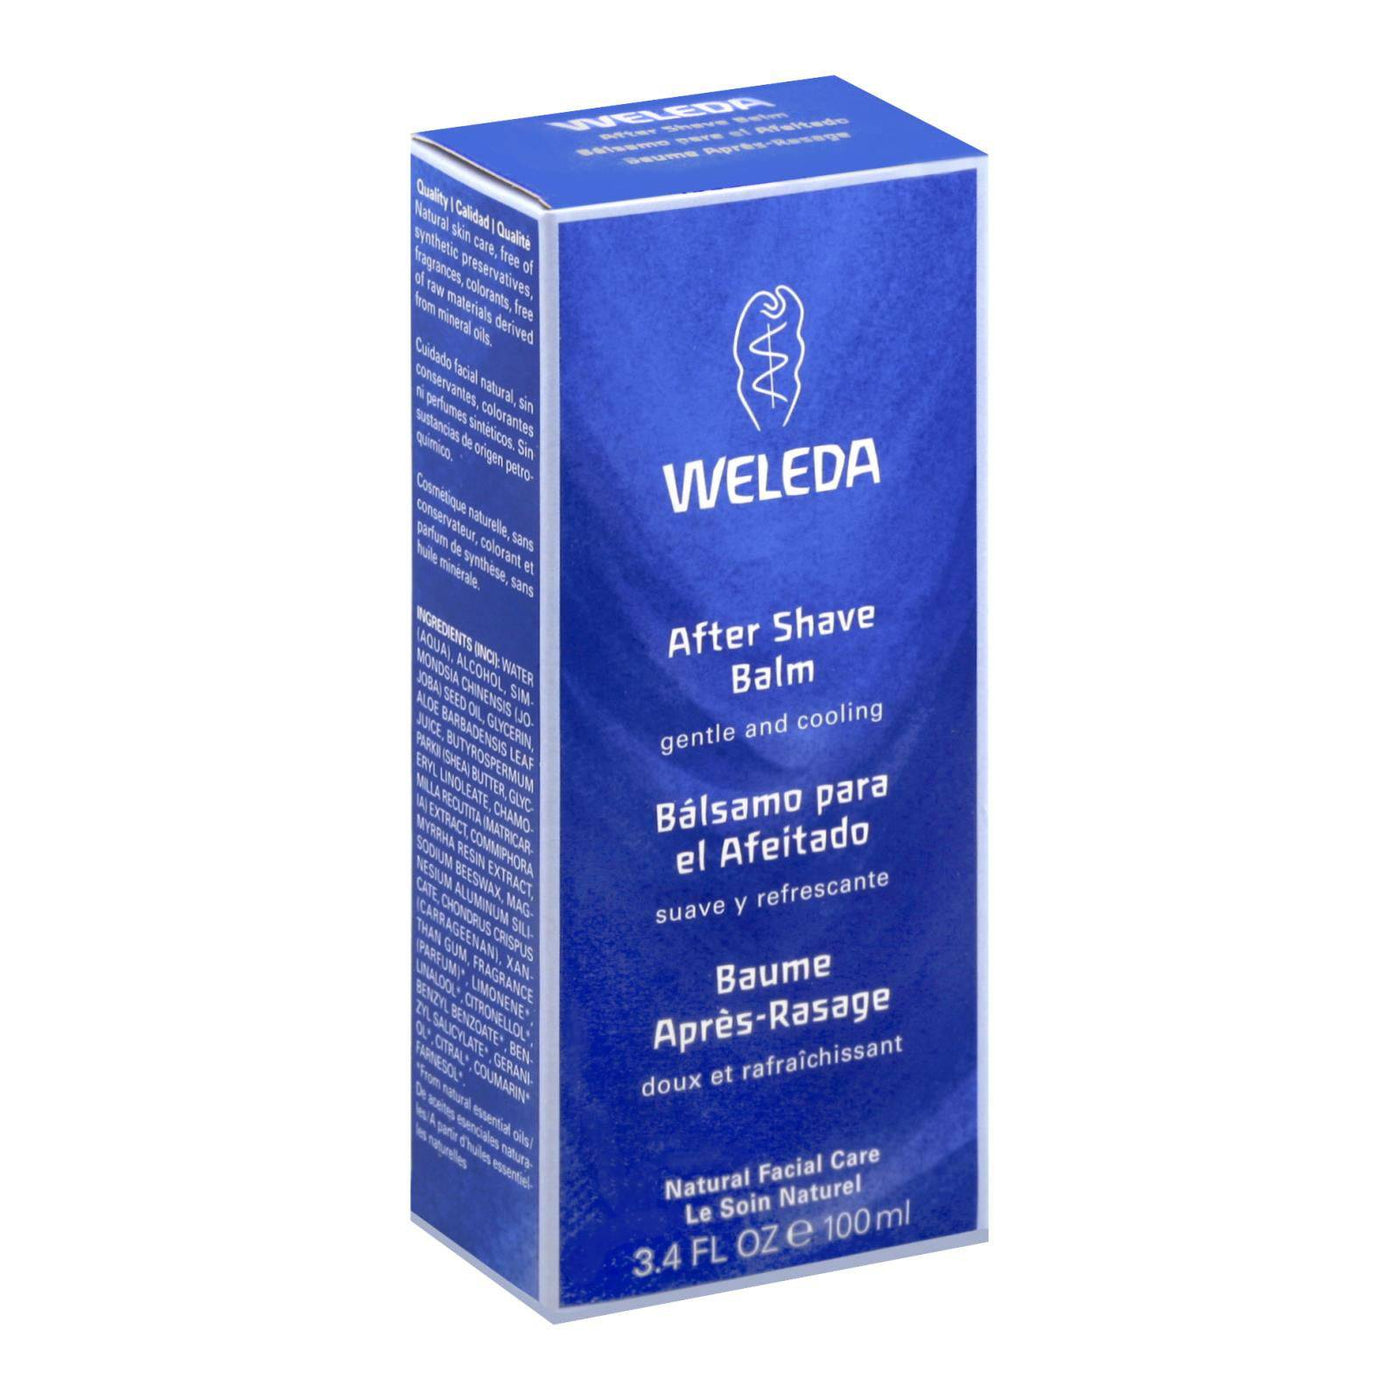 Buy Weleda After Shave Balm - 3.4 Fl Oz  at OnlyNaturals.us